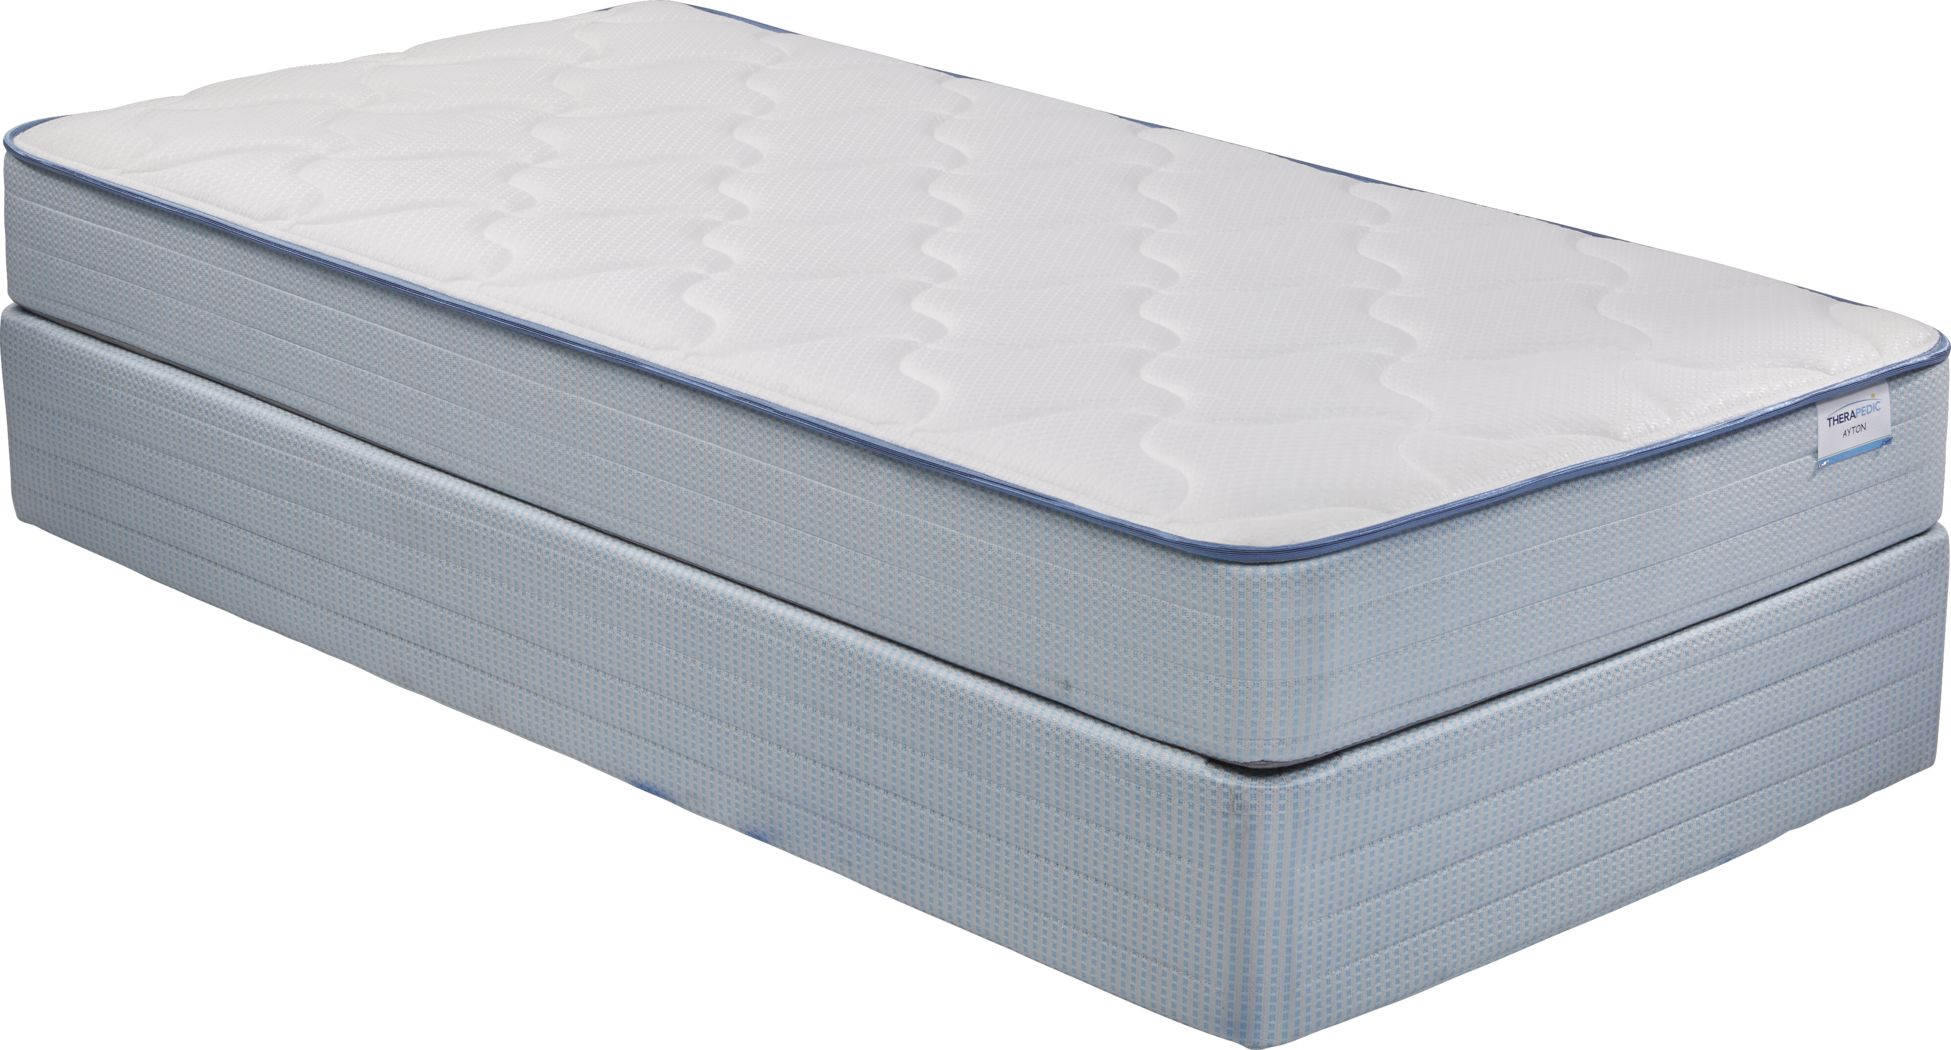 cheap twin mattress sets under 200